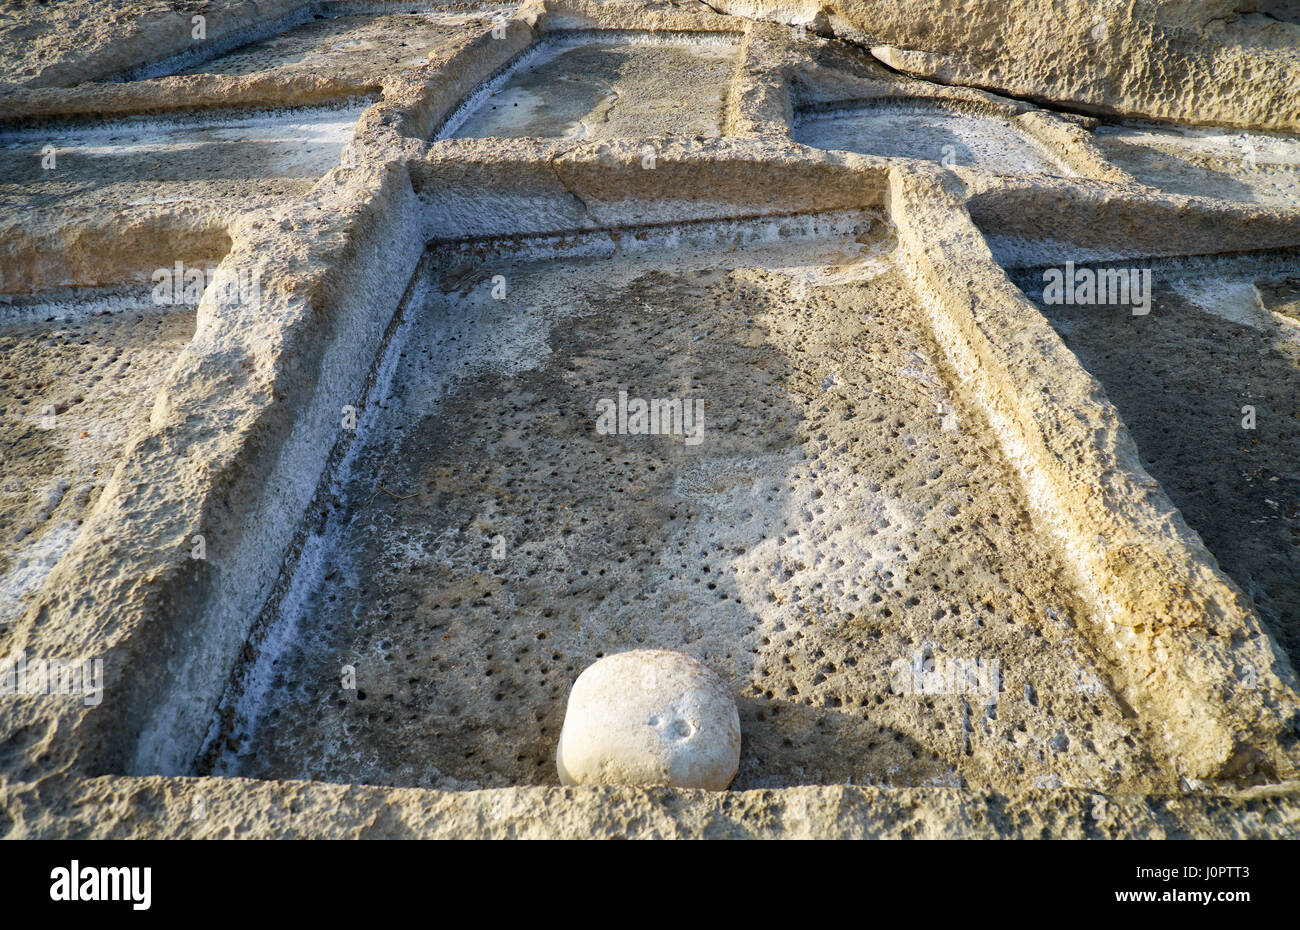 Vieilles pierres historiques salines à Marsaskala côte, utilisé pour obtenir le sel de l'eau de mer par évaporation, Malte Banque D'Images